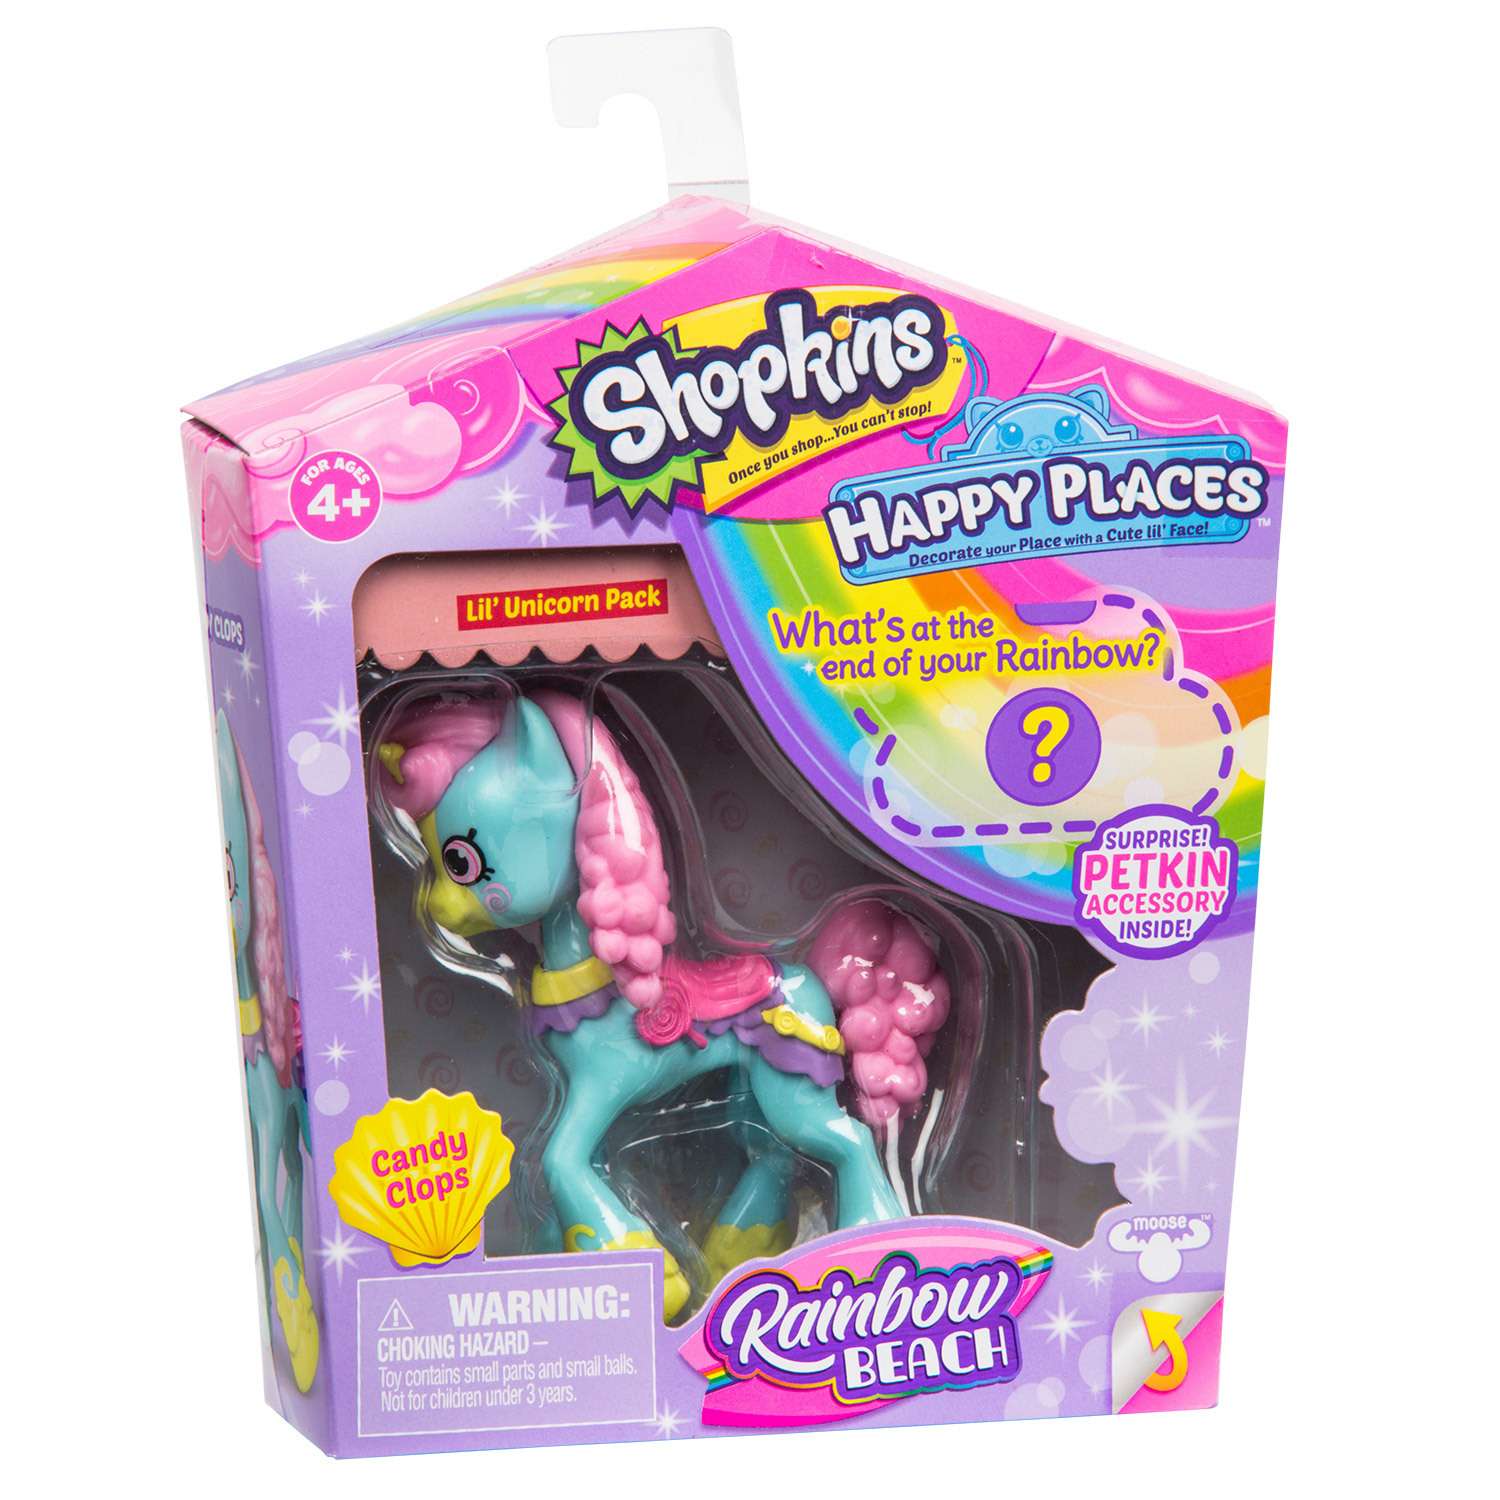 Игрушка Happy Places Shopkins с пони Кэнди Цок 56917 в непрозрачной упаковке (Сюрприз) - фото 3